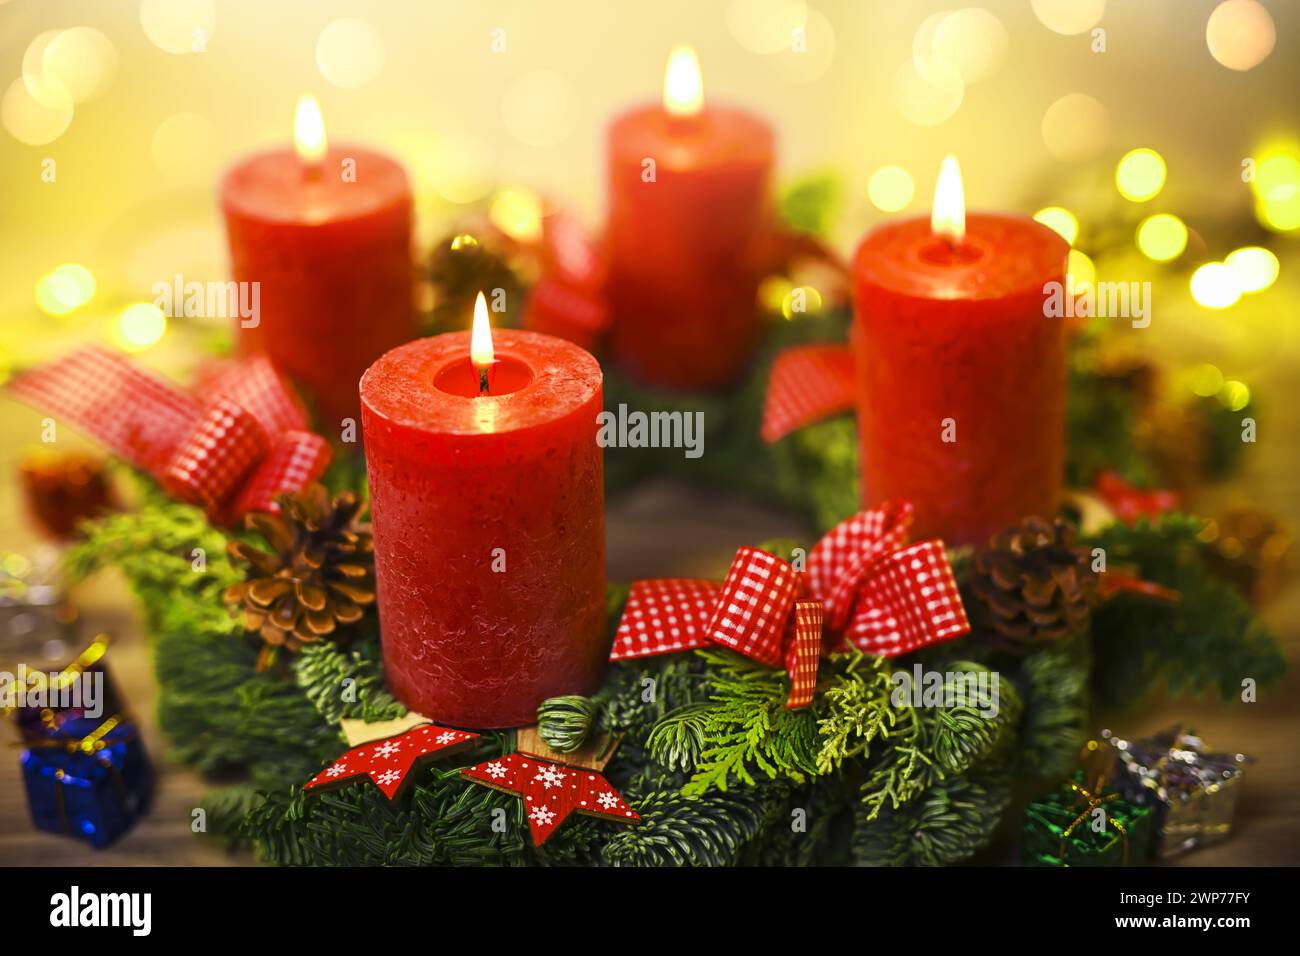 Adventskranz mit vier brennenden Kerzen Stock Photo